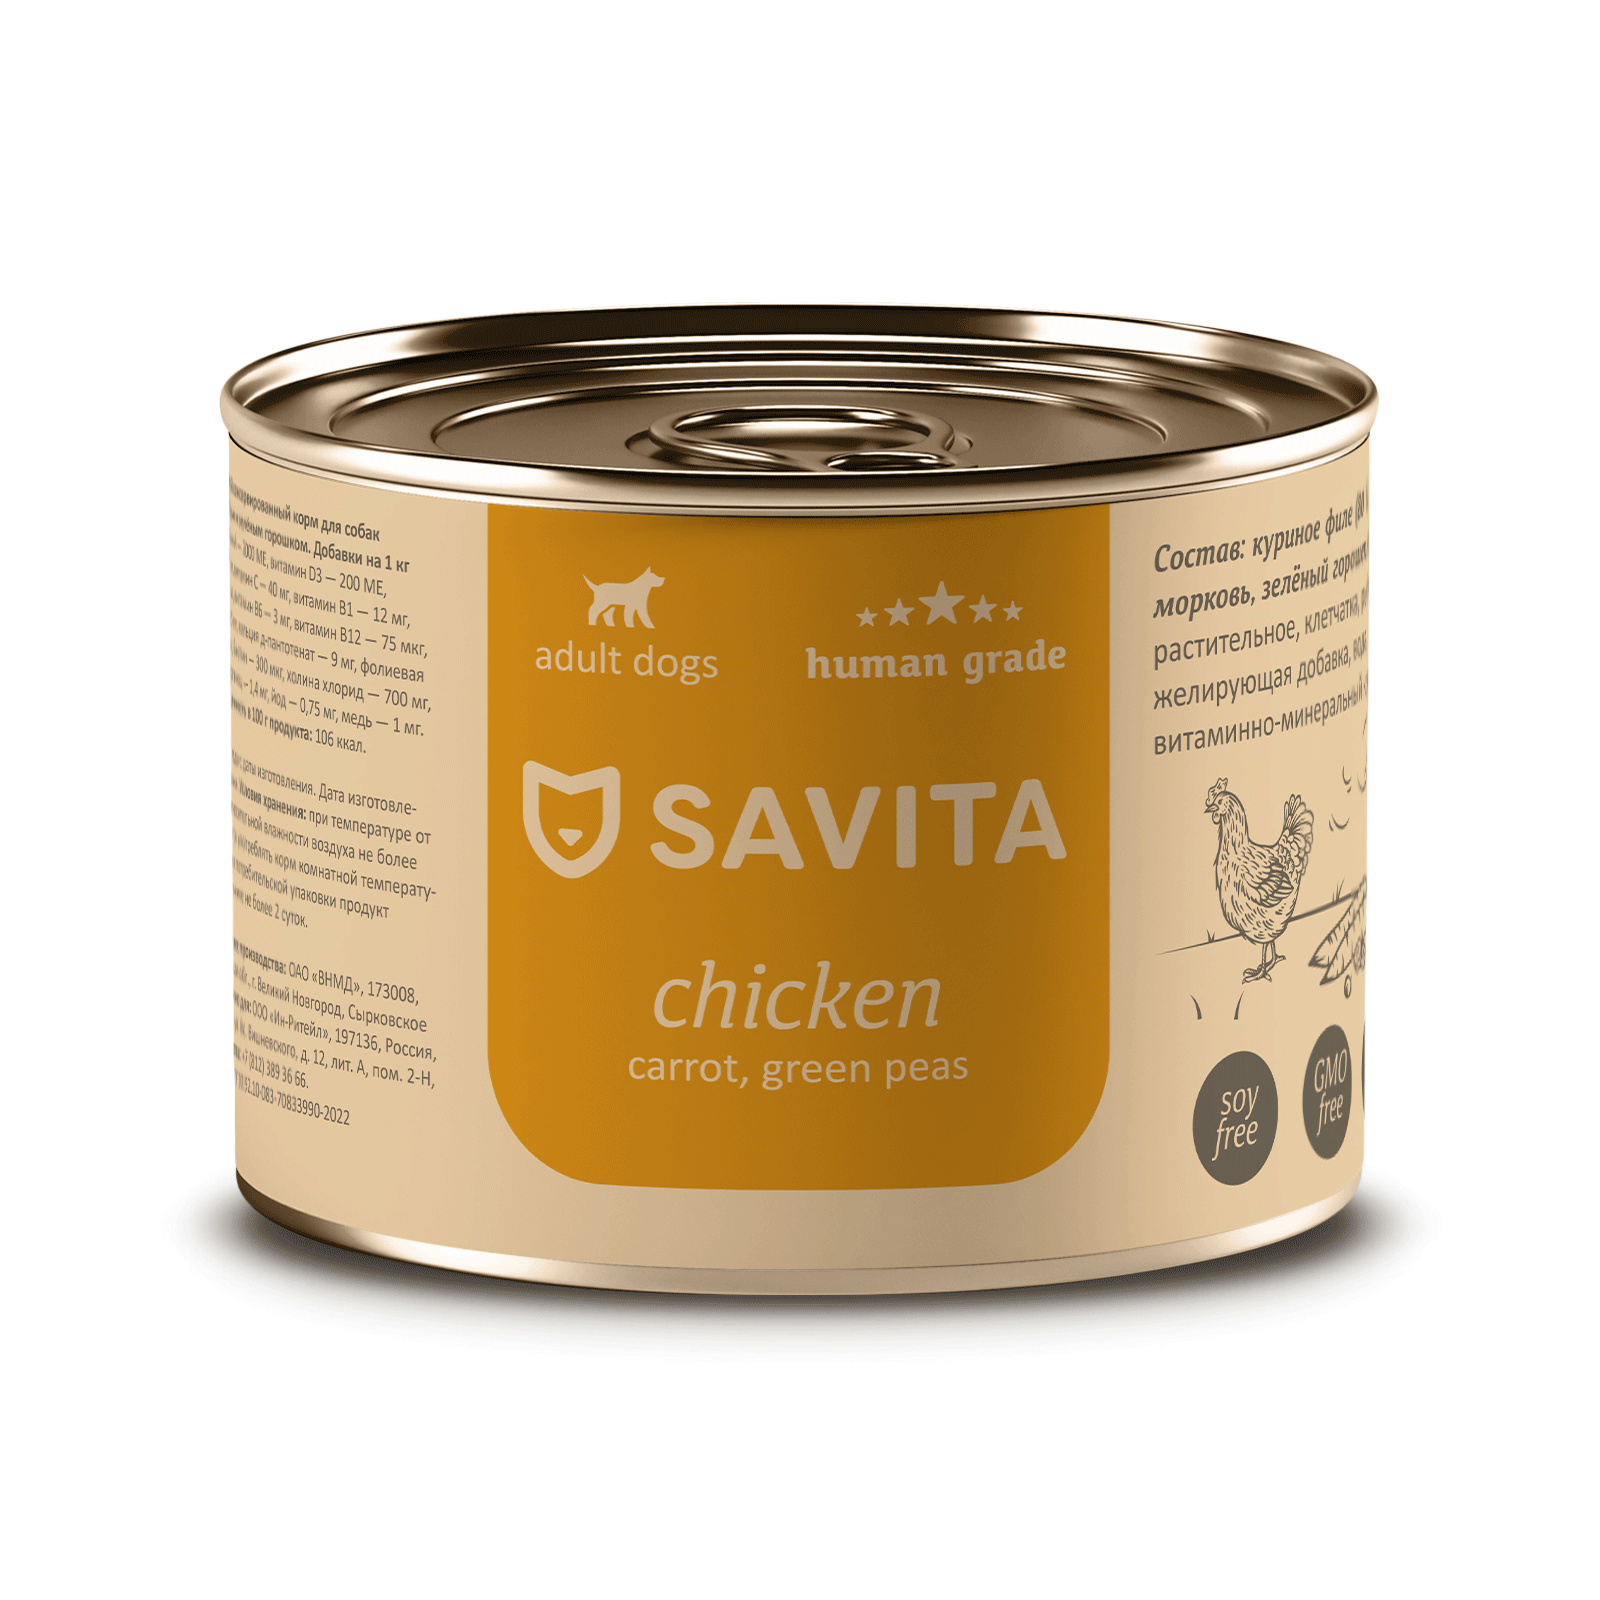 SAVITA консервы для собак «Курица с морковью и зеленым горошком» (410 г)